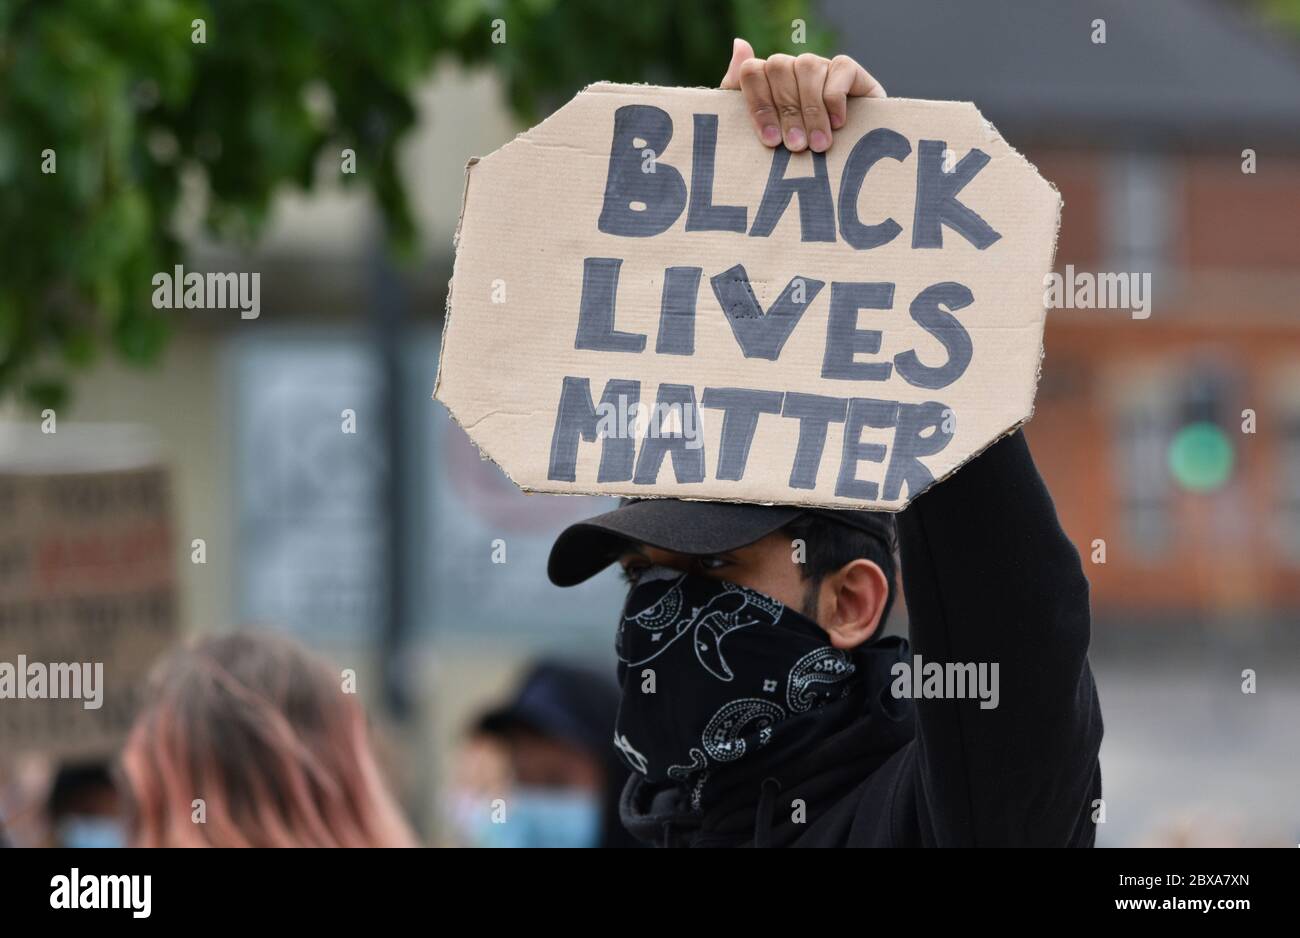 Ein männlicher Protestler bei einer Anti-Rassismus-Kundgebung in Großbritannien hält ein Schild mit der Aufschrift "Black Lives Matter" Stockfoto